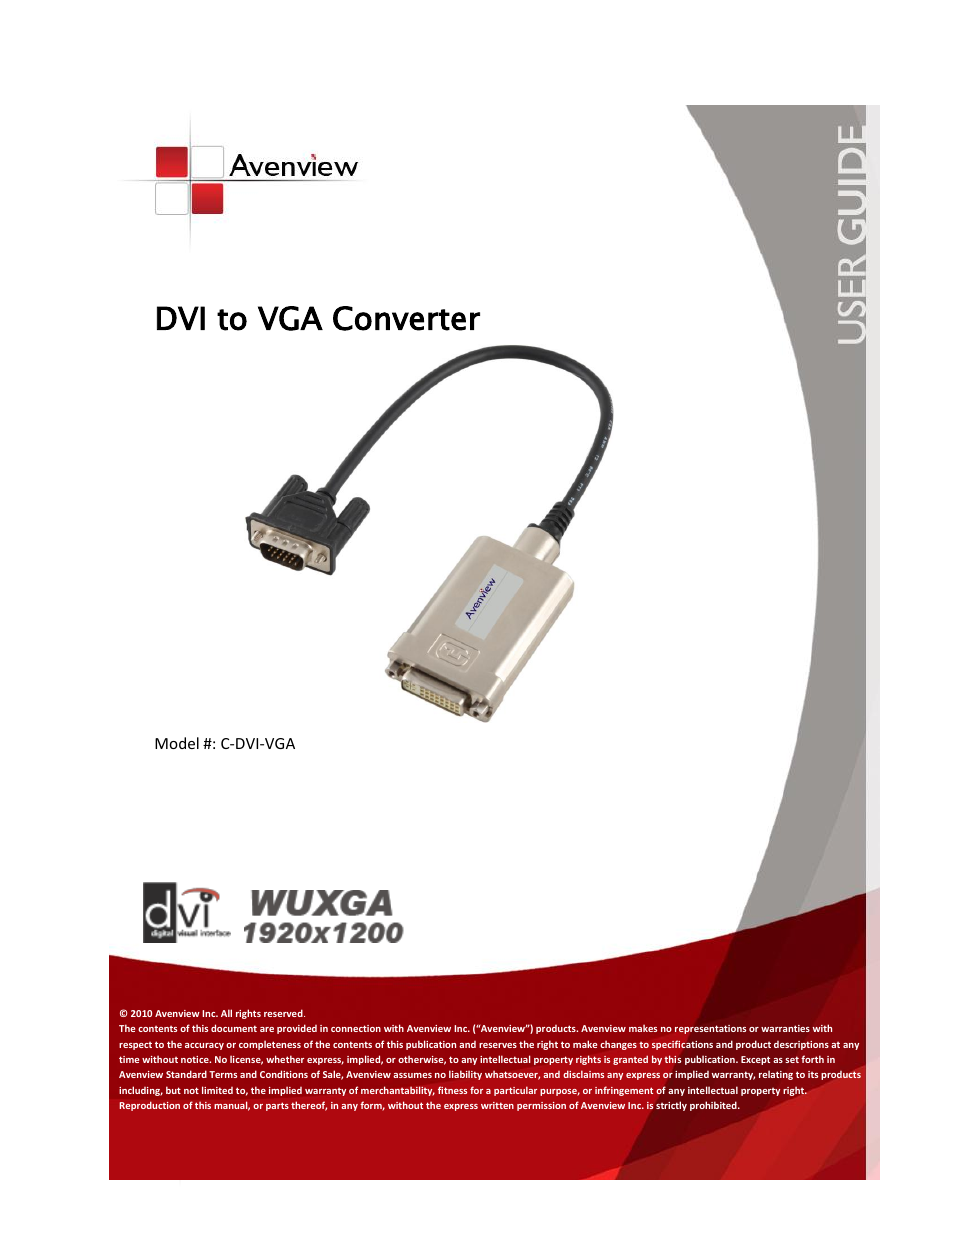 C-DVI-VGA